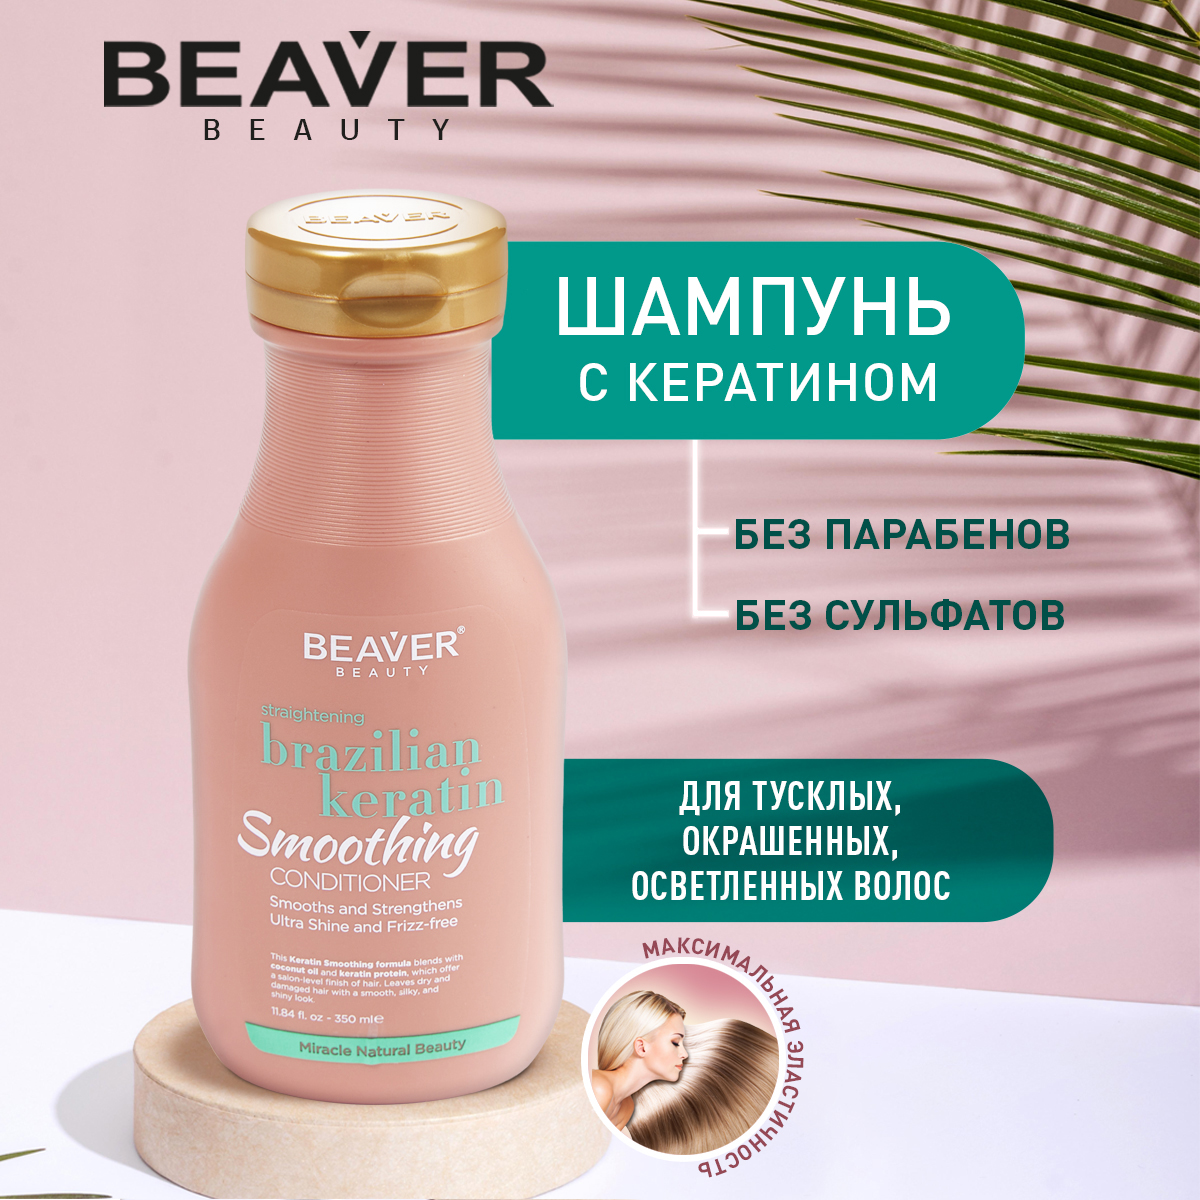 Шампунь Beaver с кератином для эластичности волос 350 мл